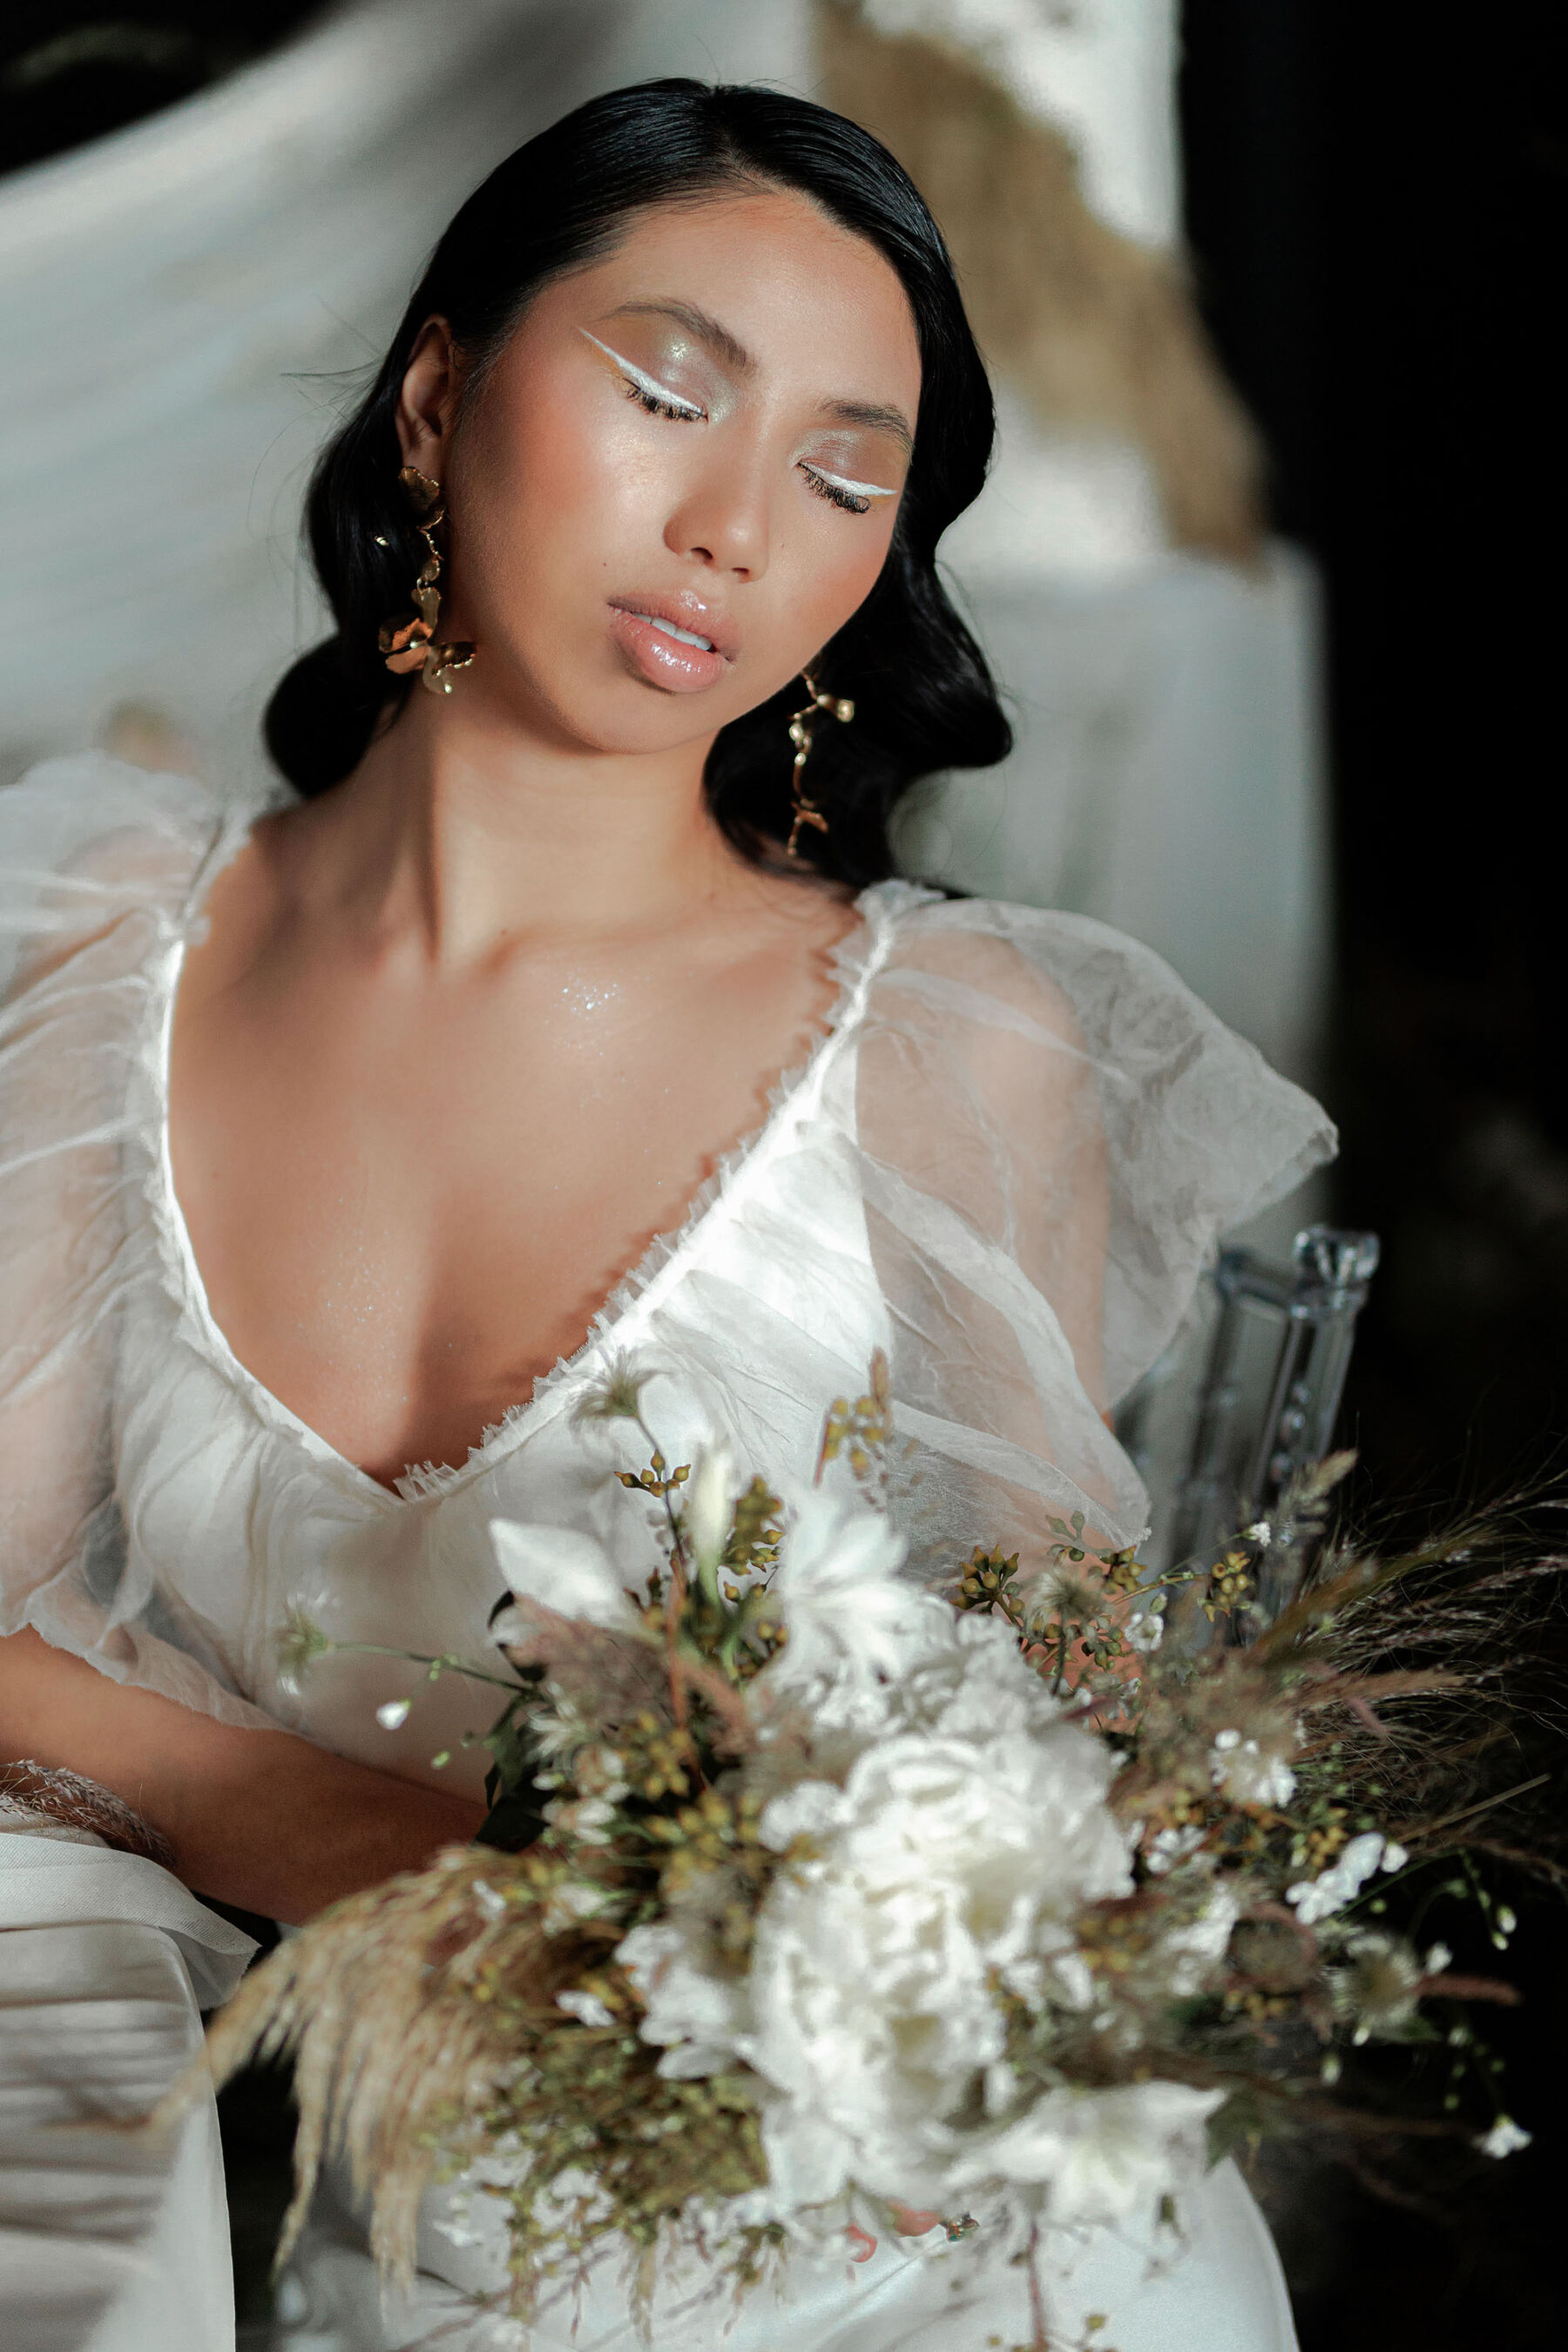 Modern marcel waves. Bridal hair. White eye shadow. A La Robe wedding dress.